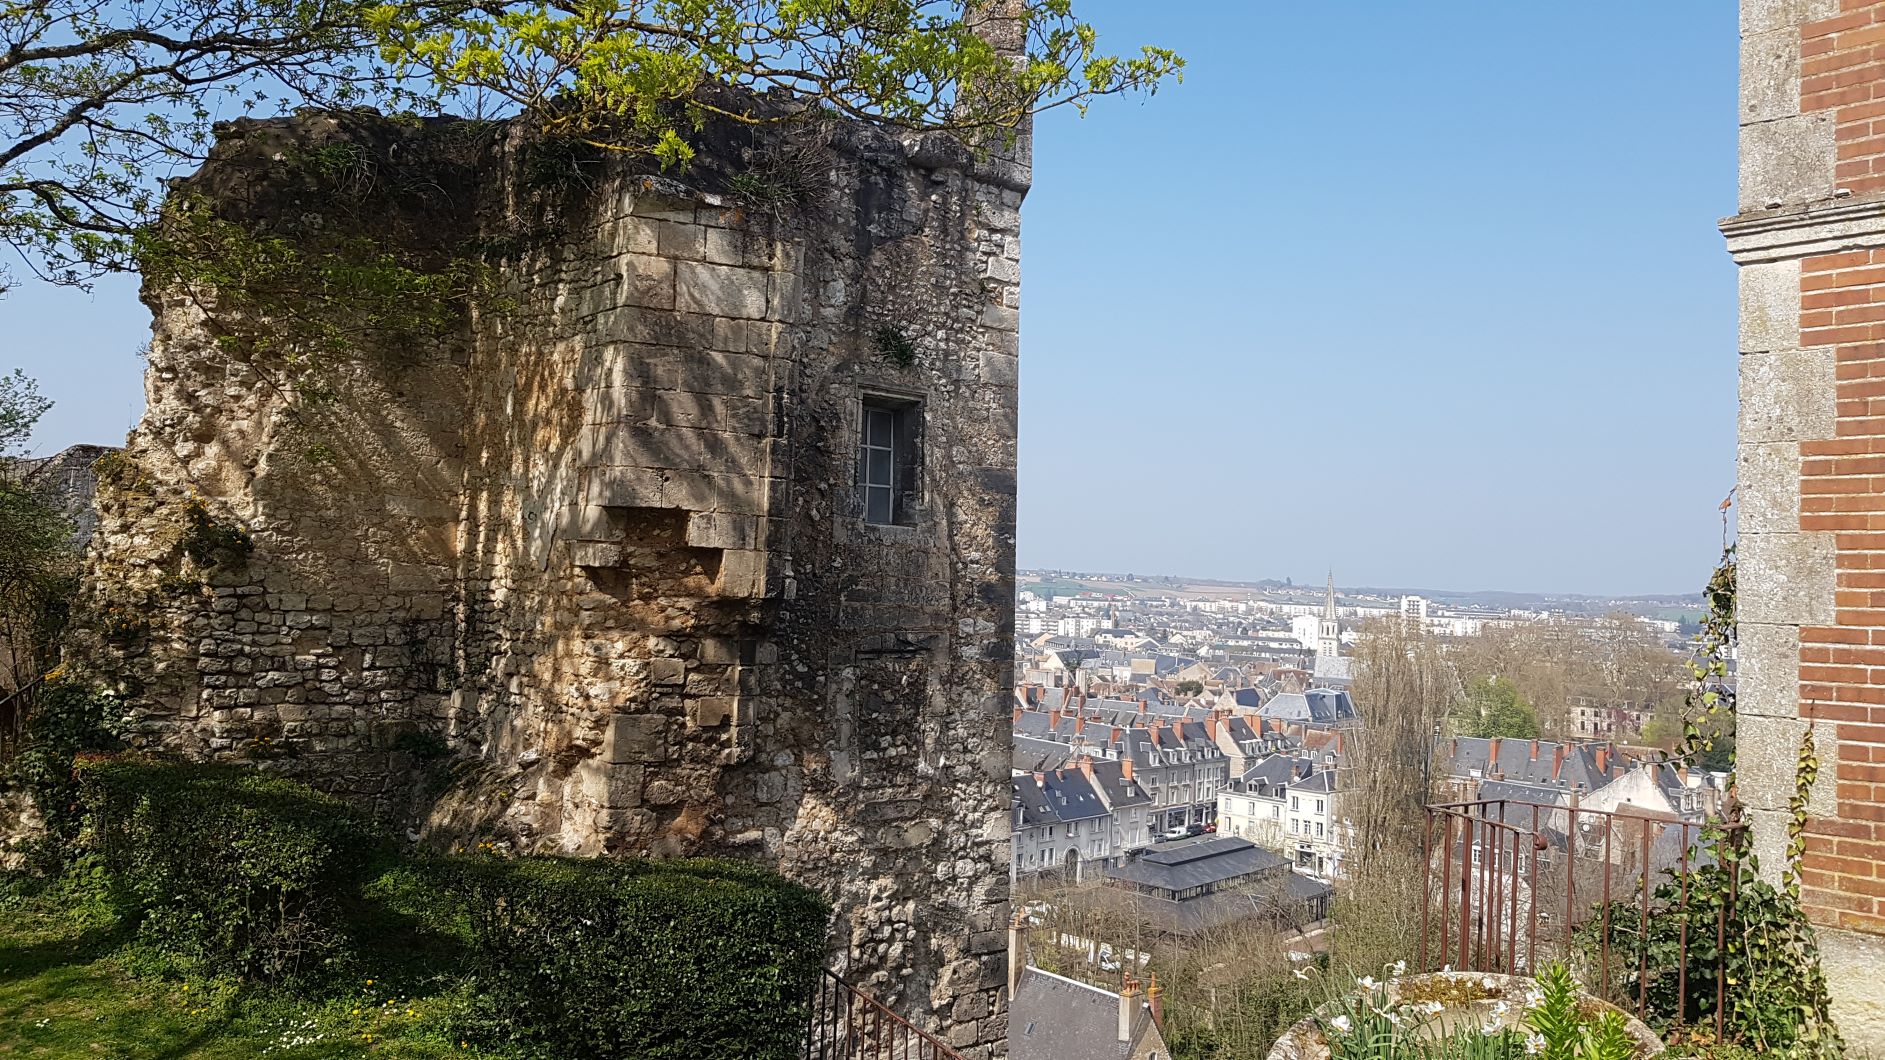 Vue sur la ville de Vendôme entre une ruine du Château à gauche et la belle demeure en brique rouge à droite